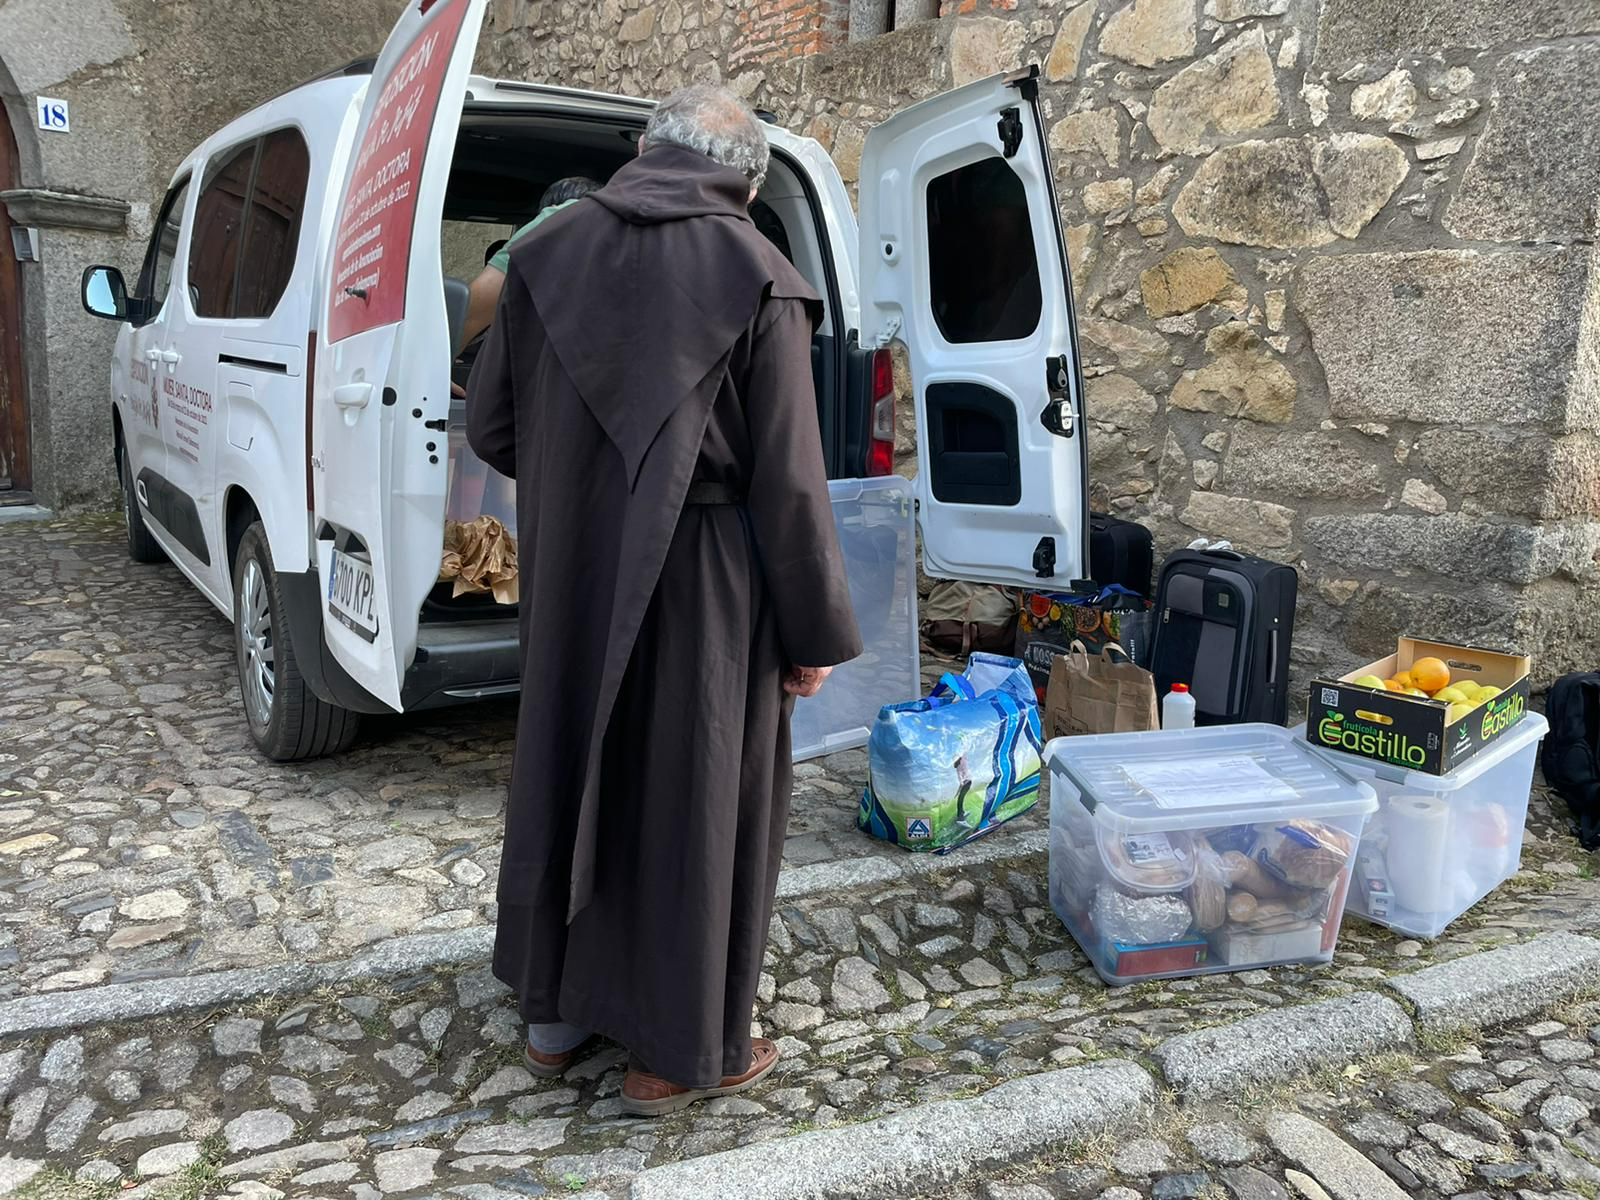 Uno de los religiosos junto a una furgoneta